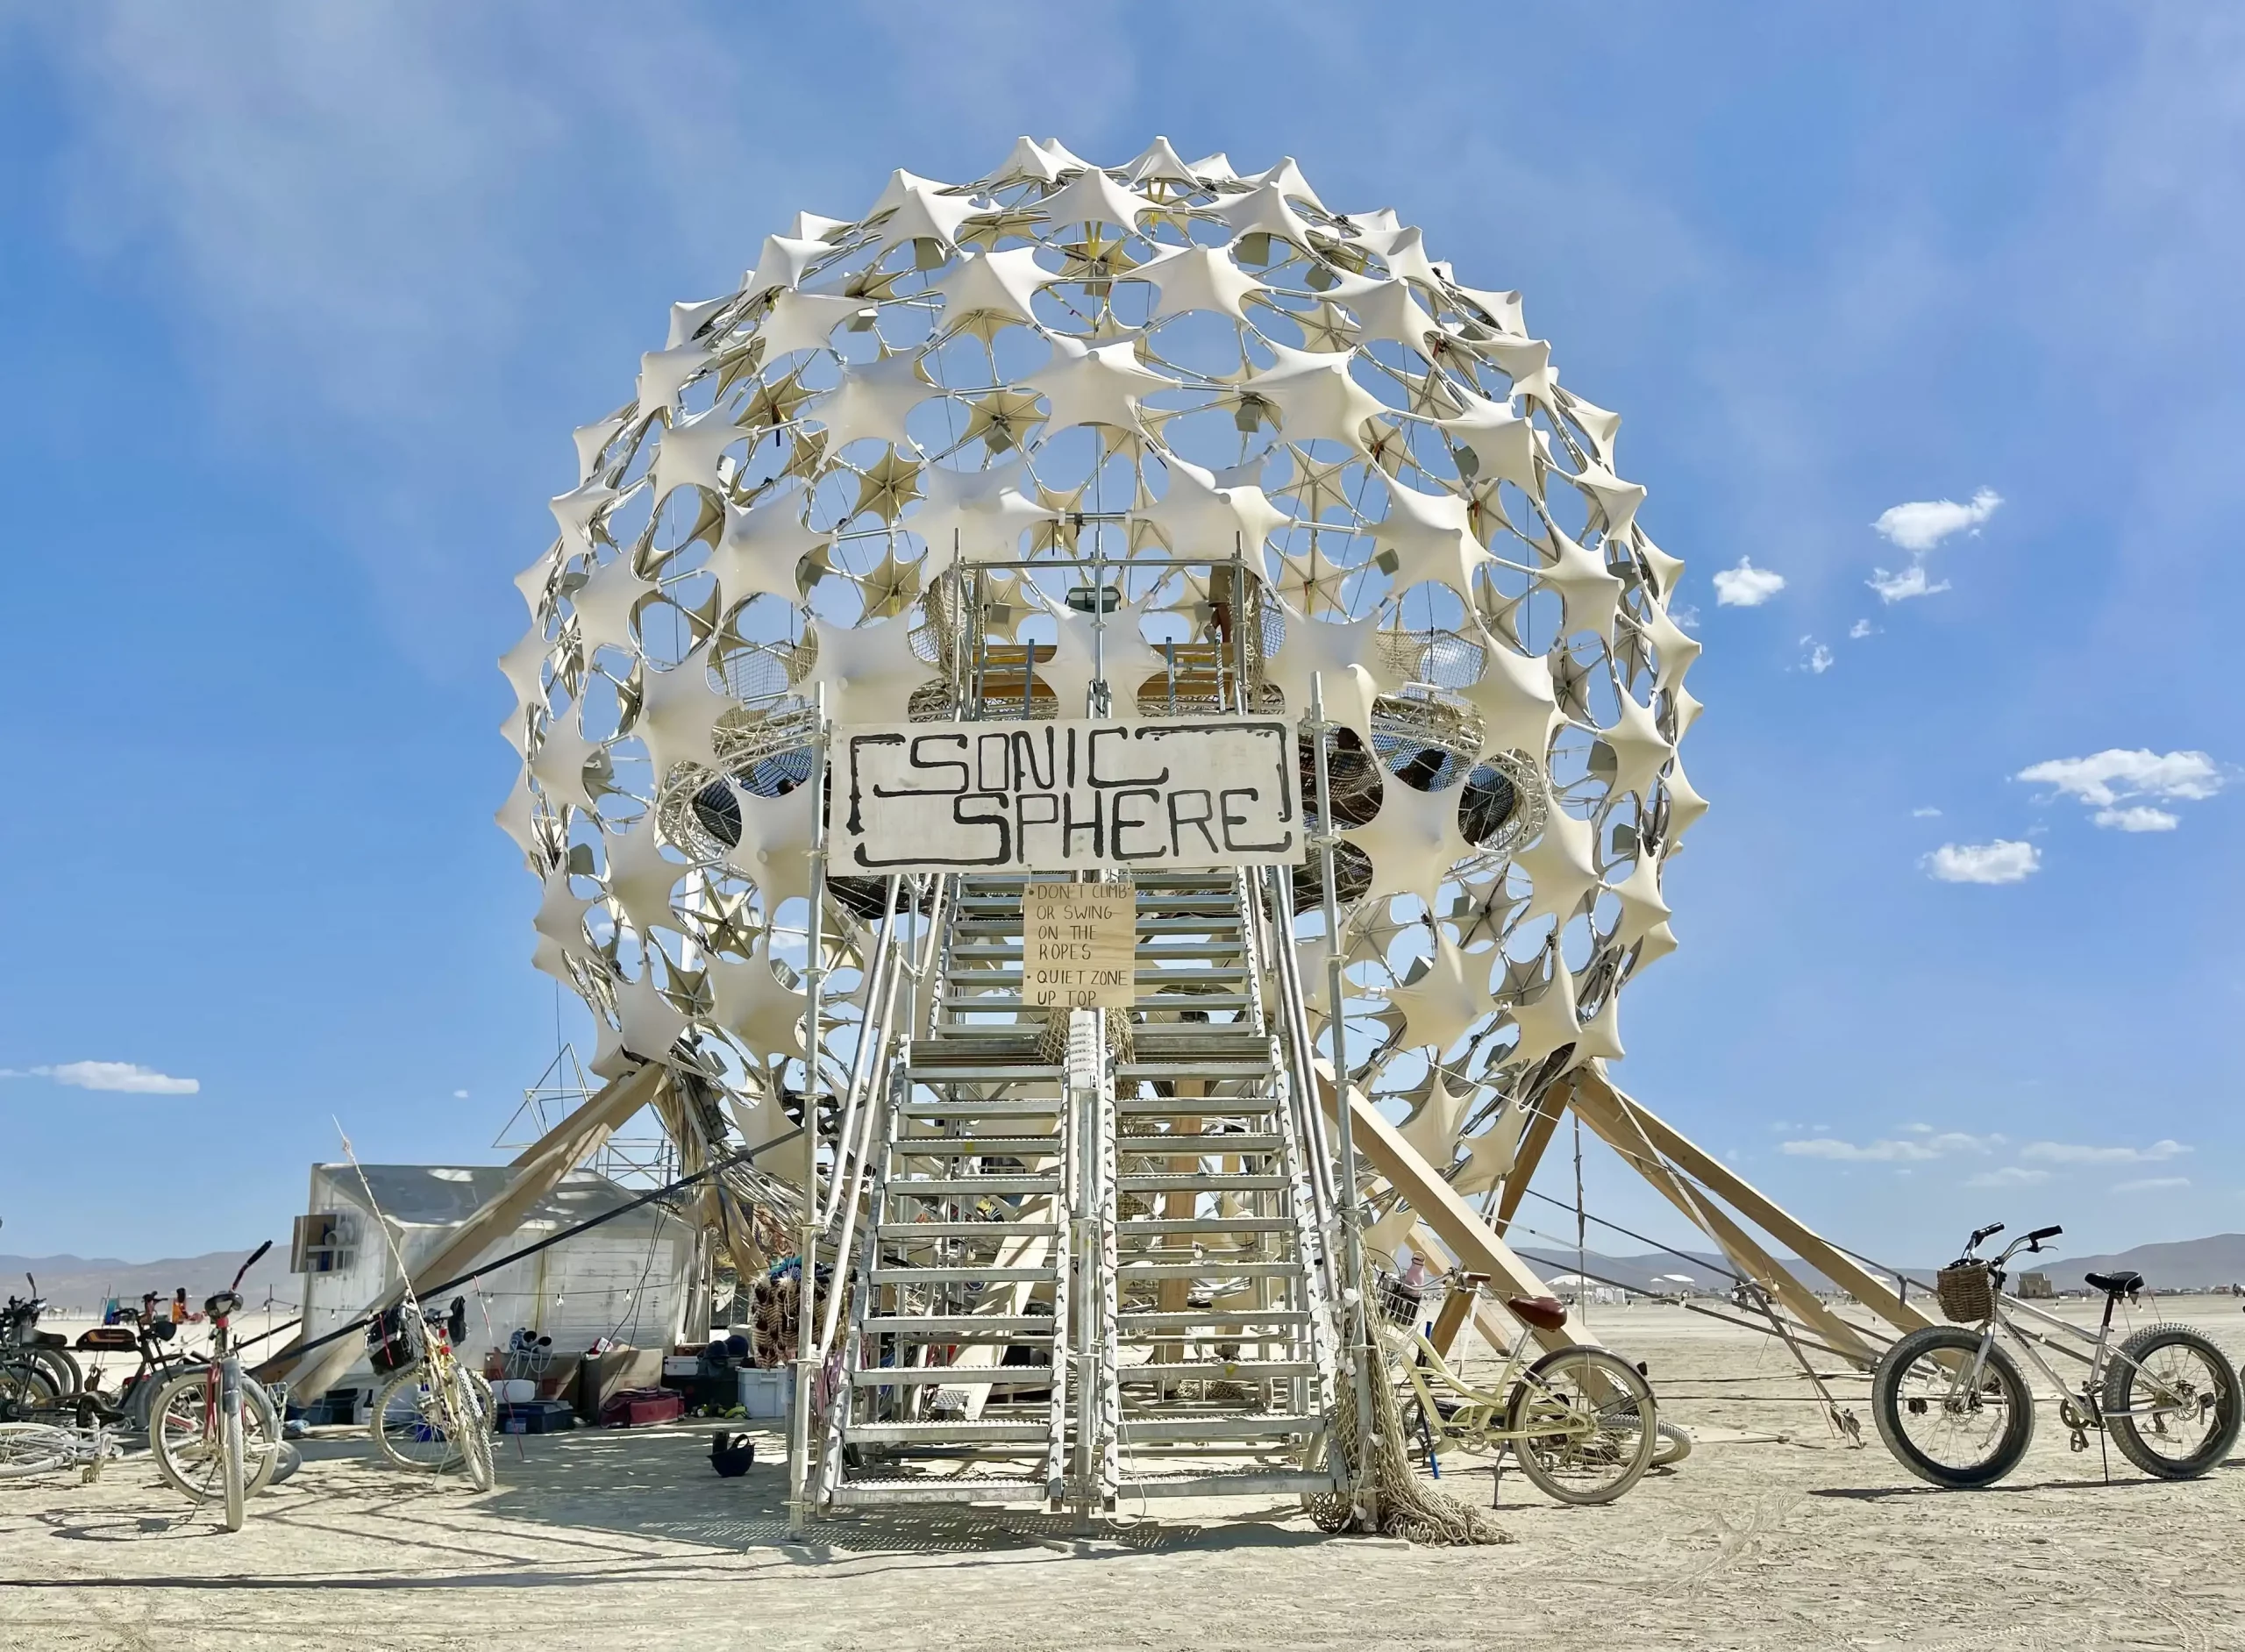 Arquitectura efímera en círculo para el festival Burning Man.